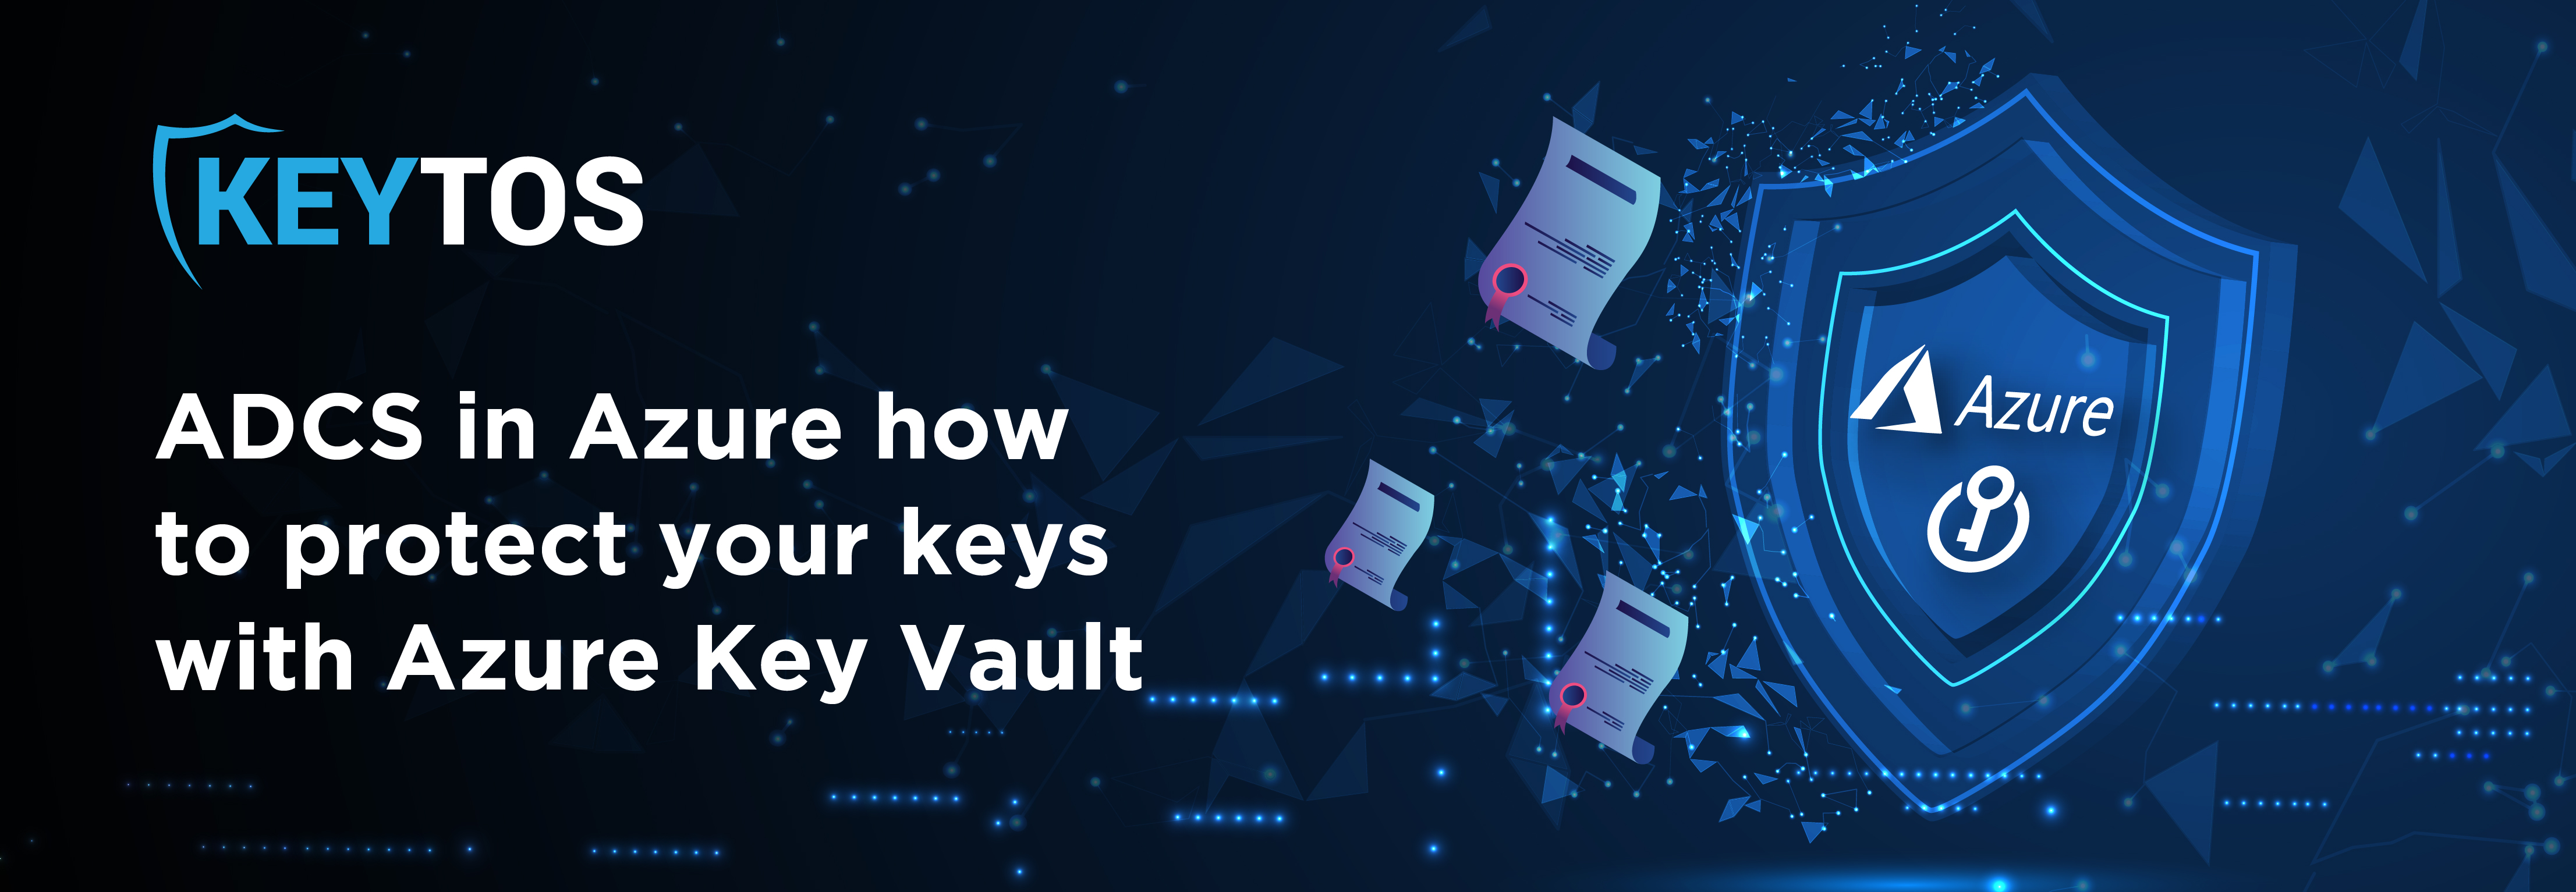 Autoridad certificadora Azure Key Vault. ADCS en Azure: cómo proteger sus claves privadas con Azure Key Vault o HSM dedicado.